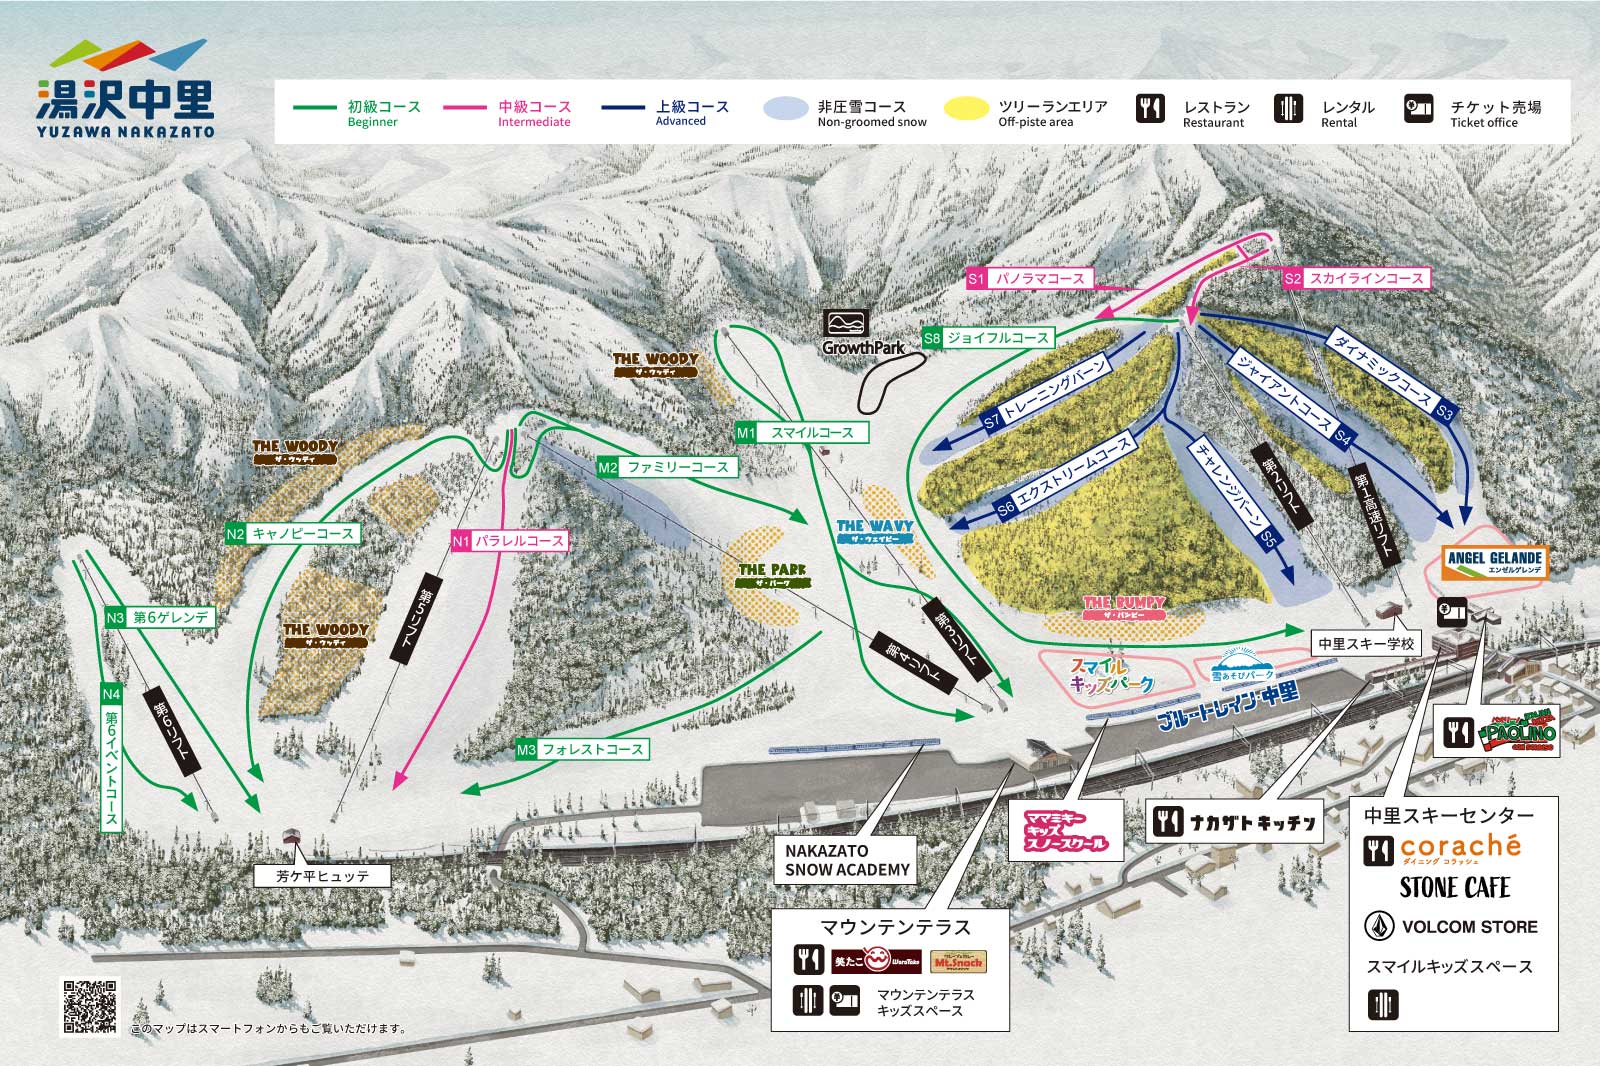 湯沢中里スノーリゾート す 最新号掲載アイテム - スキー場